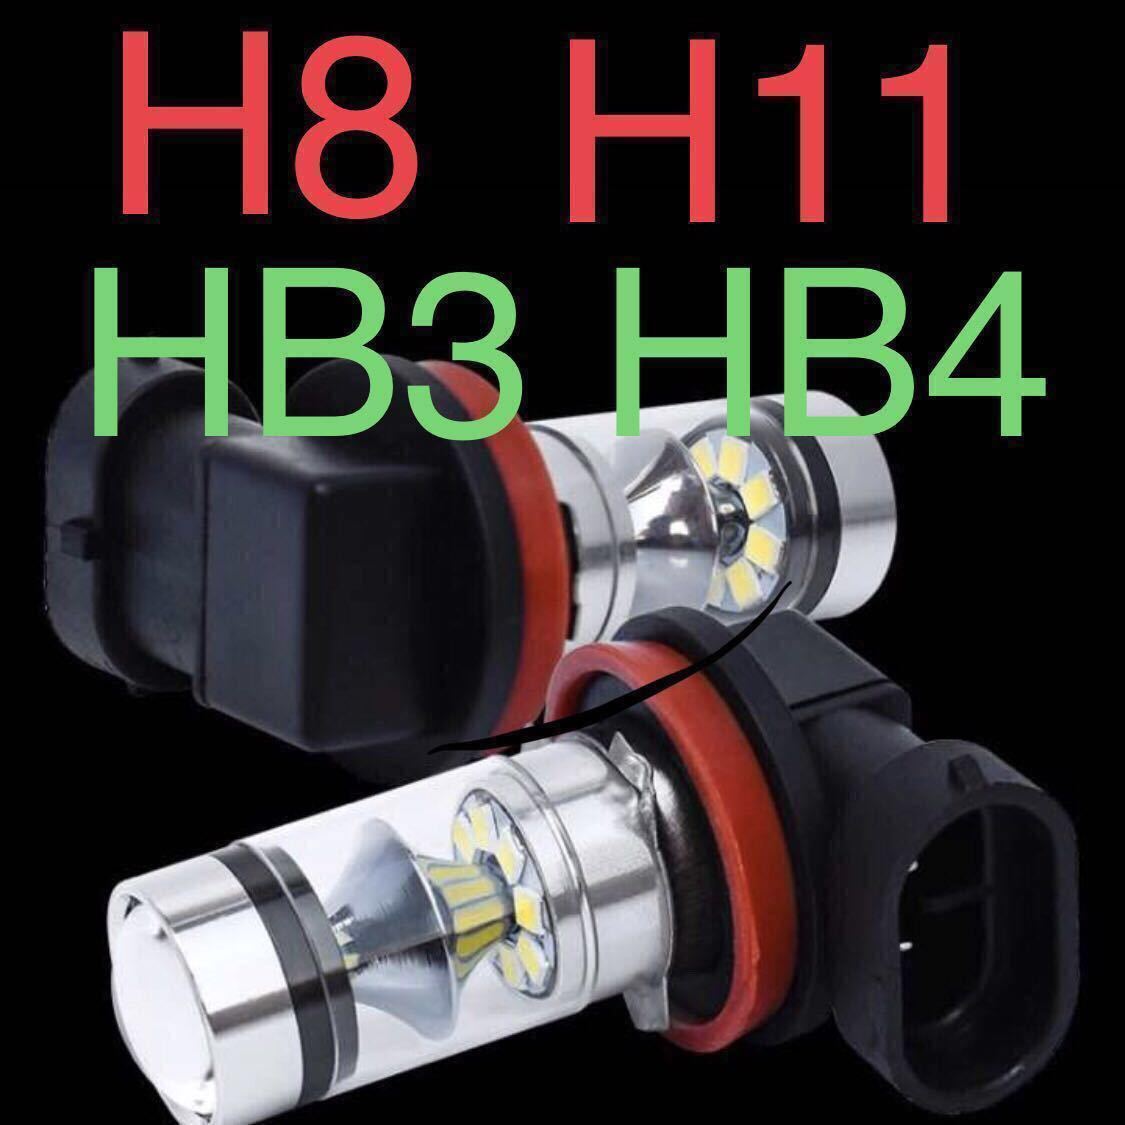 全國免費送貨最便宜的LED燈H8 H11 HB3 HB4霧燈新品6000k白色白色 原文:全国送料無料 激安 LED ライト H8 H11 HB3 HB4 フォグランプ 新品 6000k ホワイト 白 